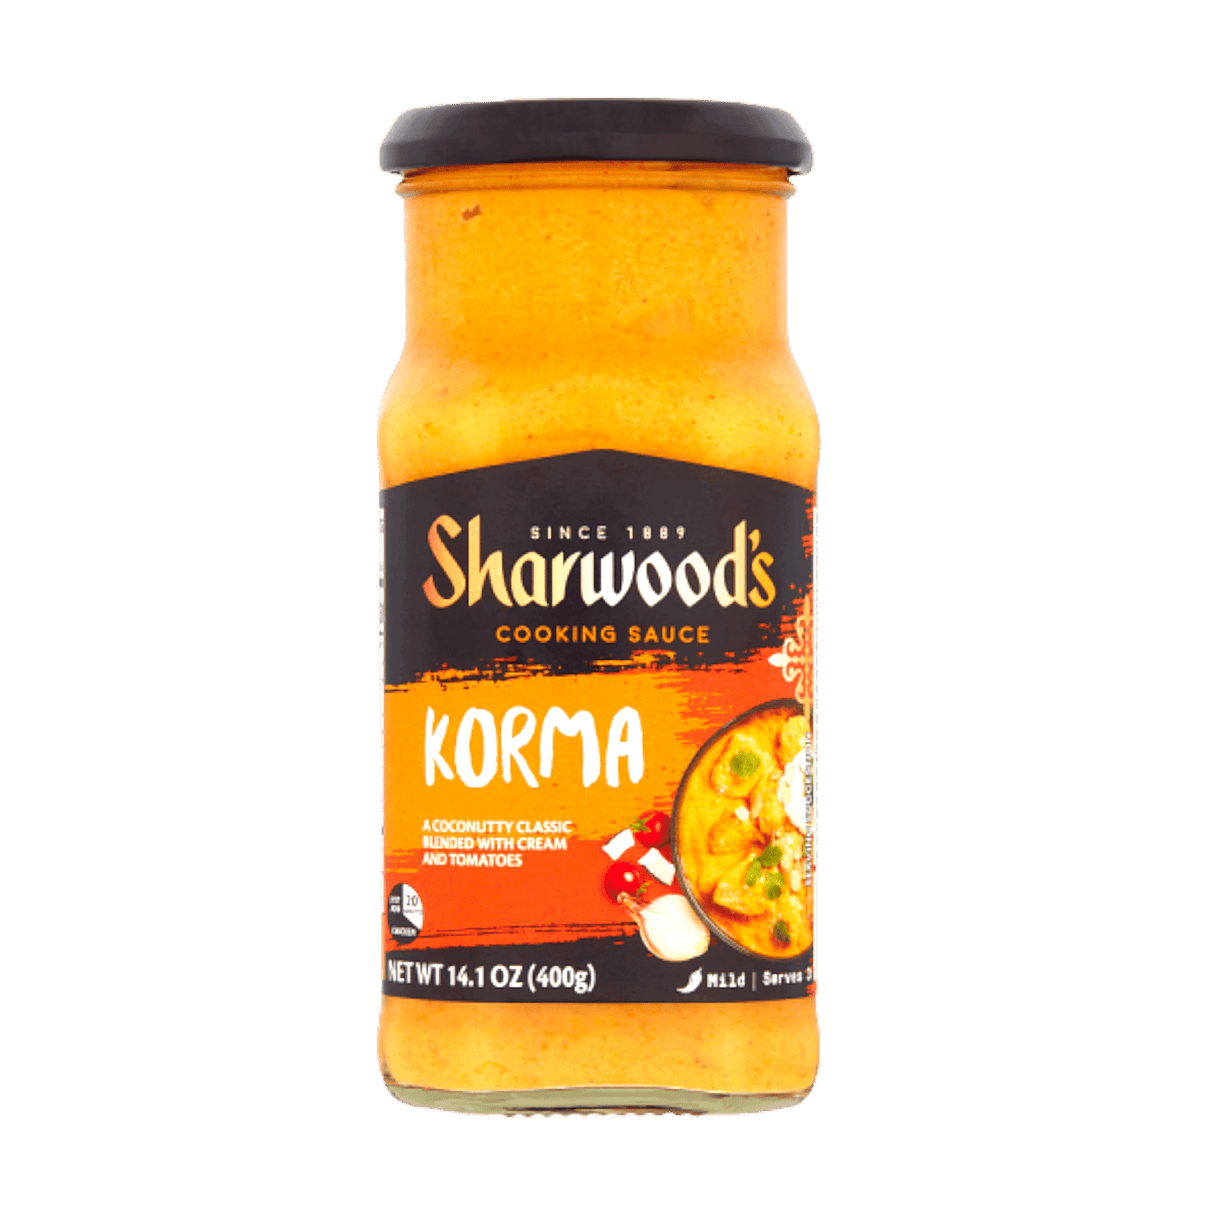 Sharwoods Korma Cooking Sauce